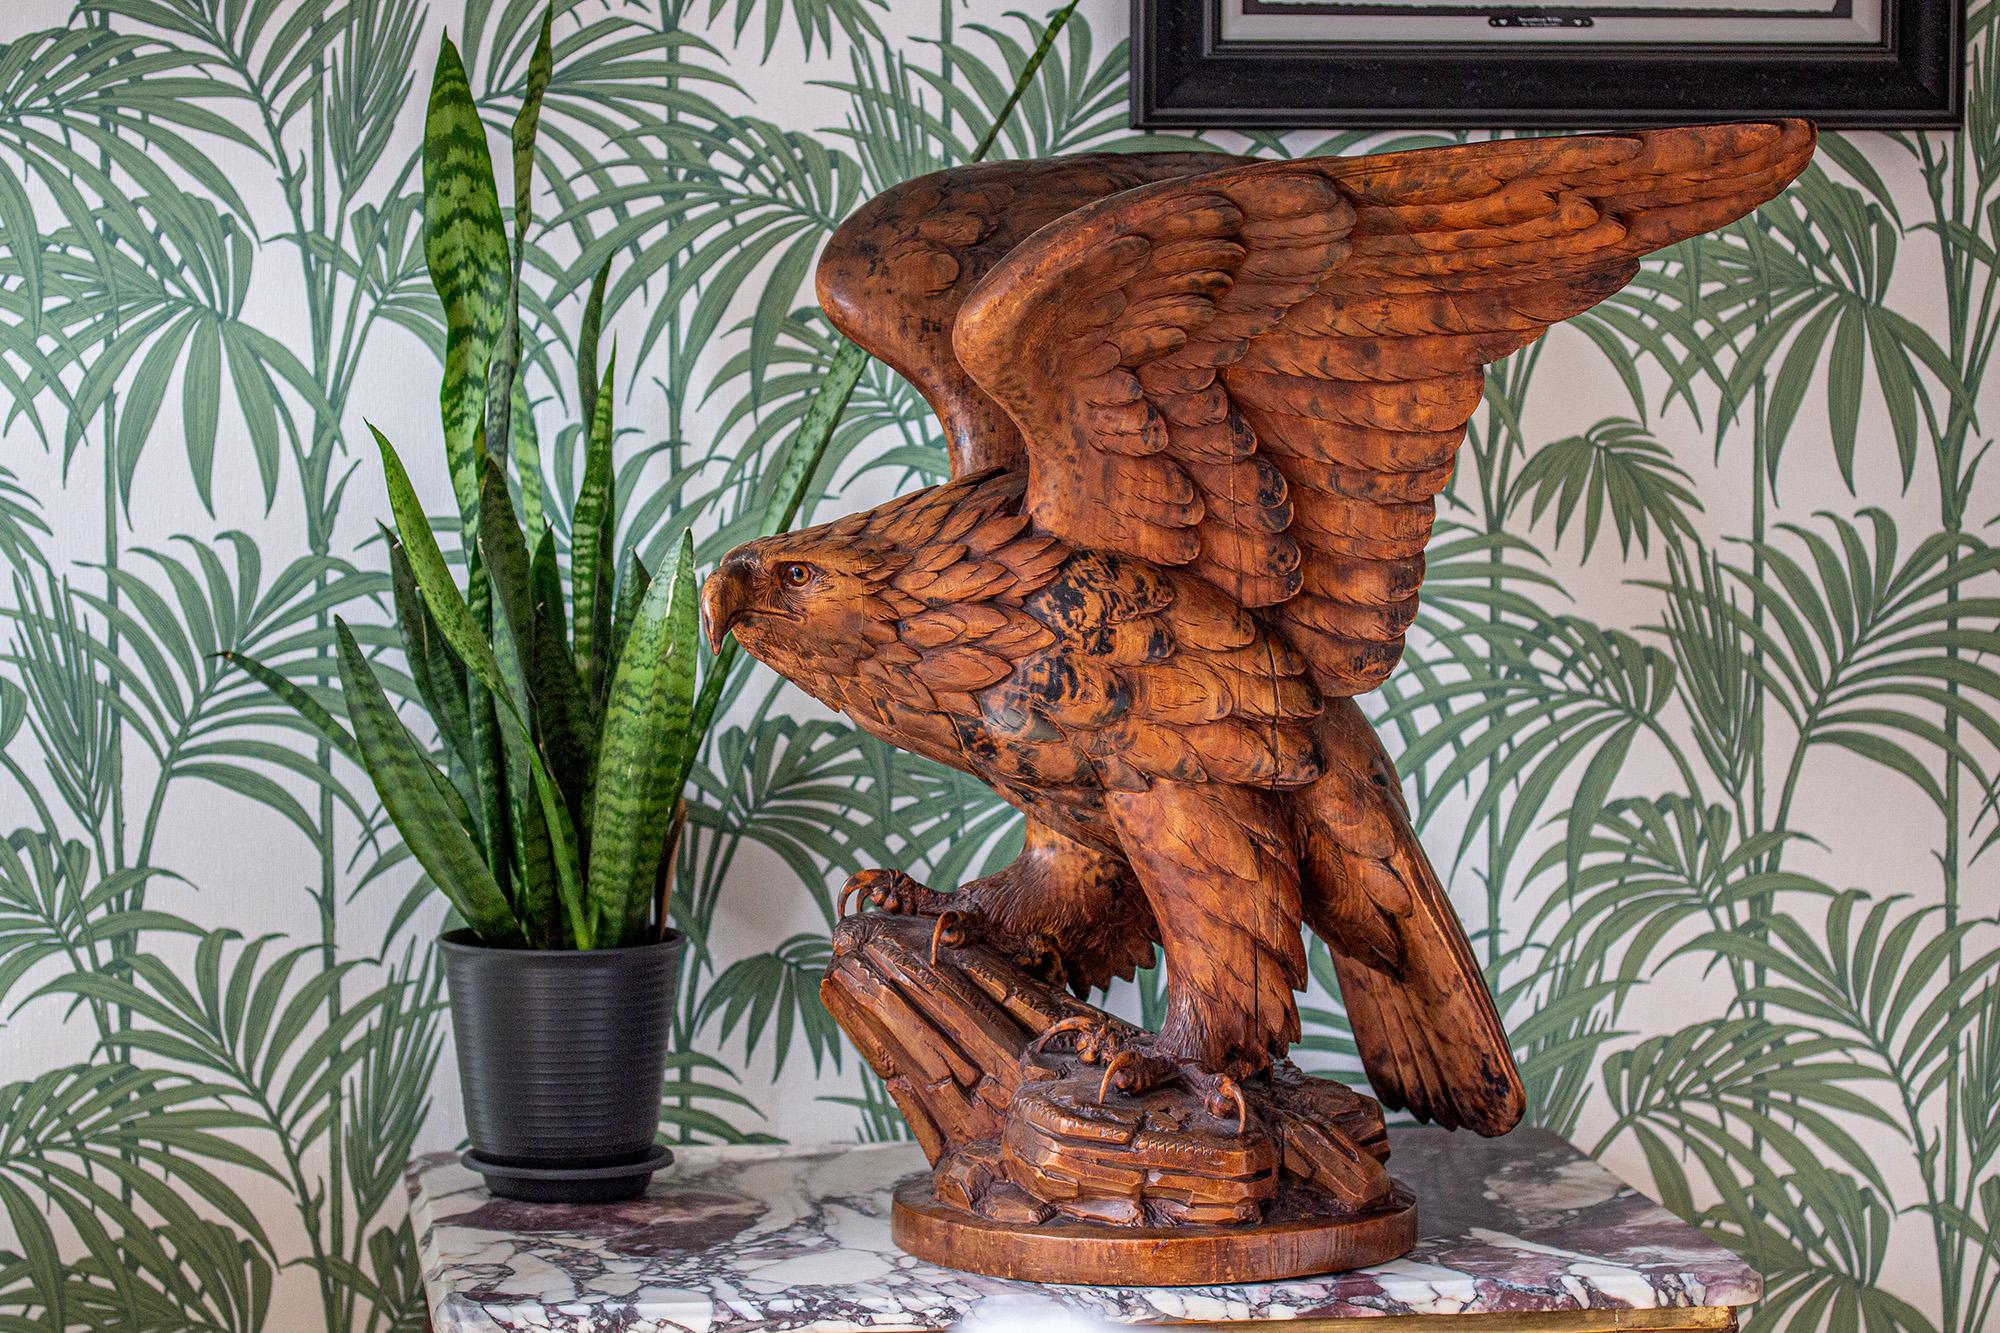 Belle sculpture suisse d'aigle de la Forêt-Noire de taille importante. L'aigle est magnifiquement sculpté avec des détails exceptionnels, perché sur un affleurement rocheux avec une base arrondie. L'aigle aux serres menaçantes s'agrippe au rocher